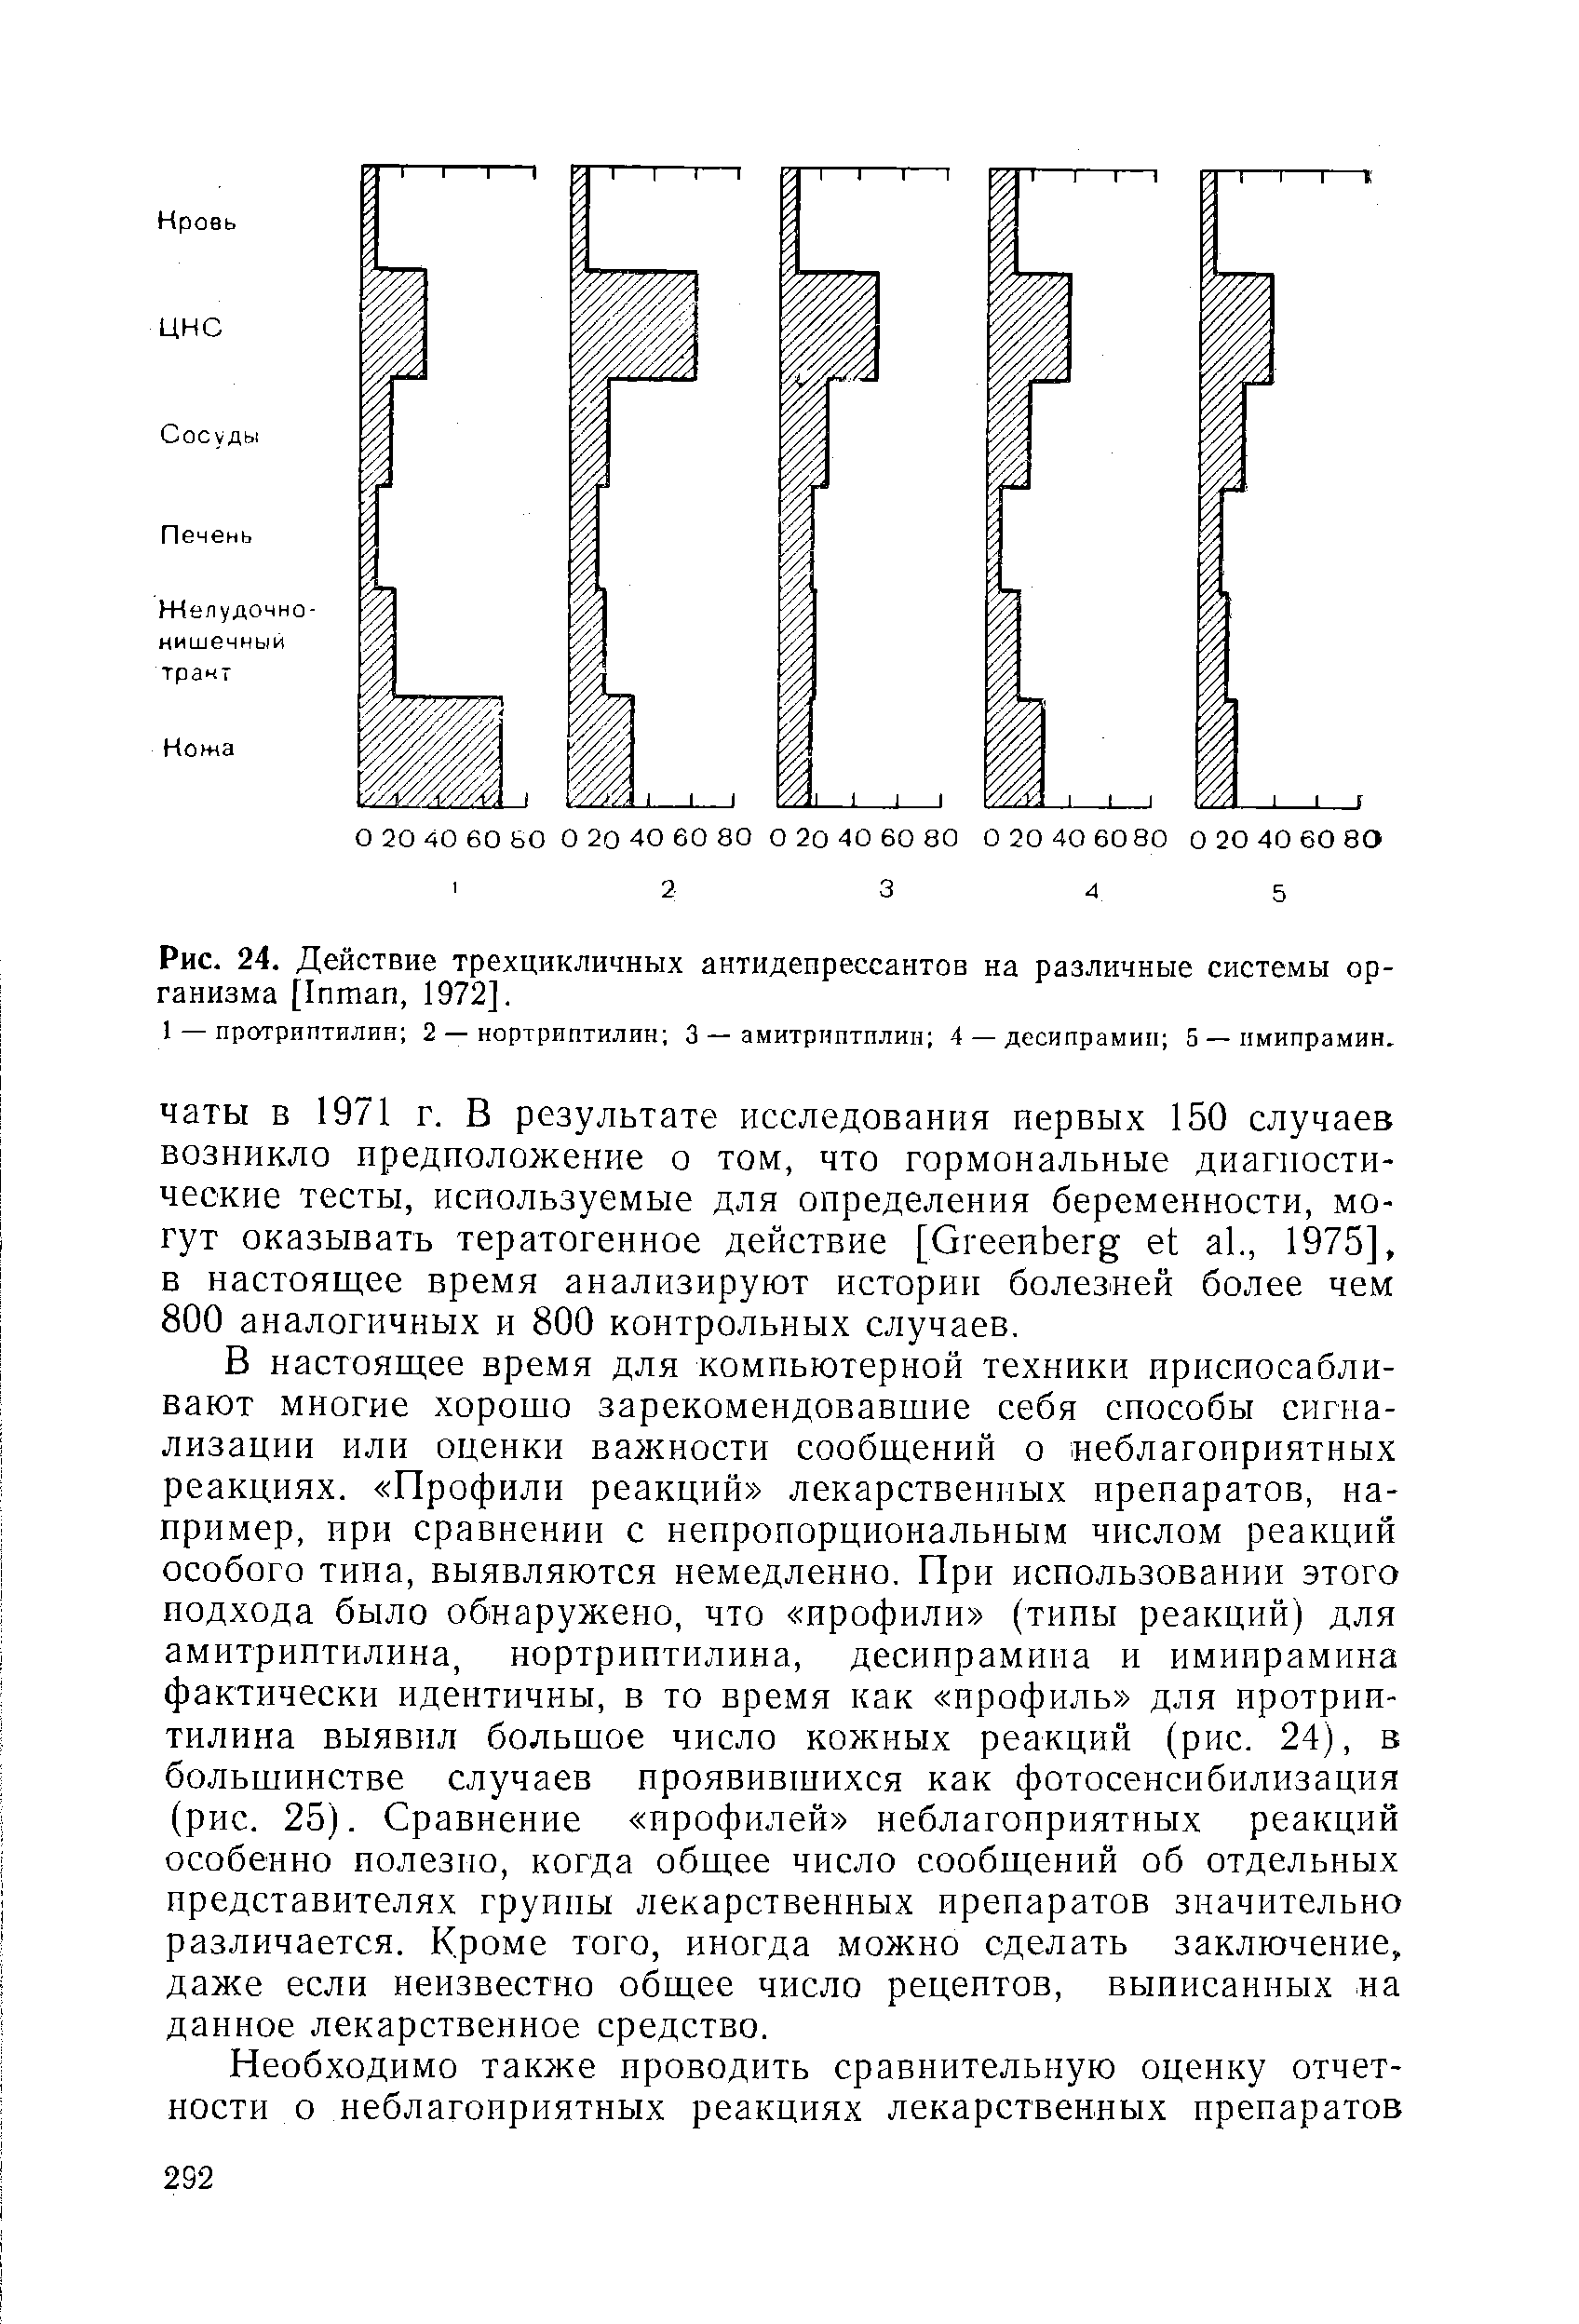 Рис. 24. Действие трехцикличных антидепрессантов на различные системы организма [I , 1972].